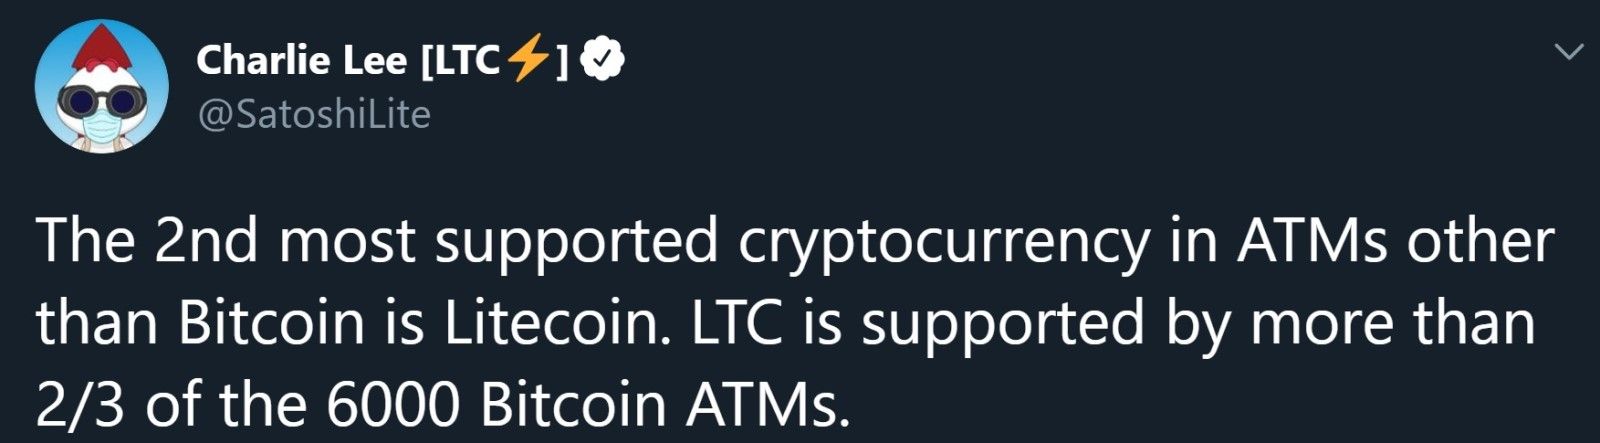 Los entusiastas de Litecoin pueden seguir a Charlie Lee para obtener actualizaciones e información útil